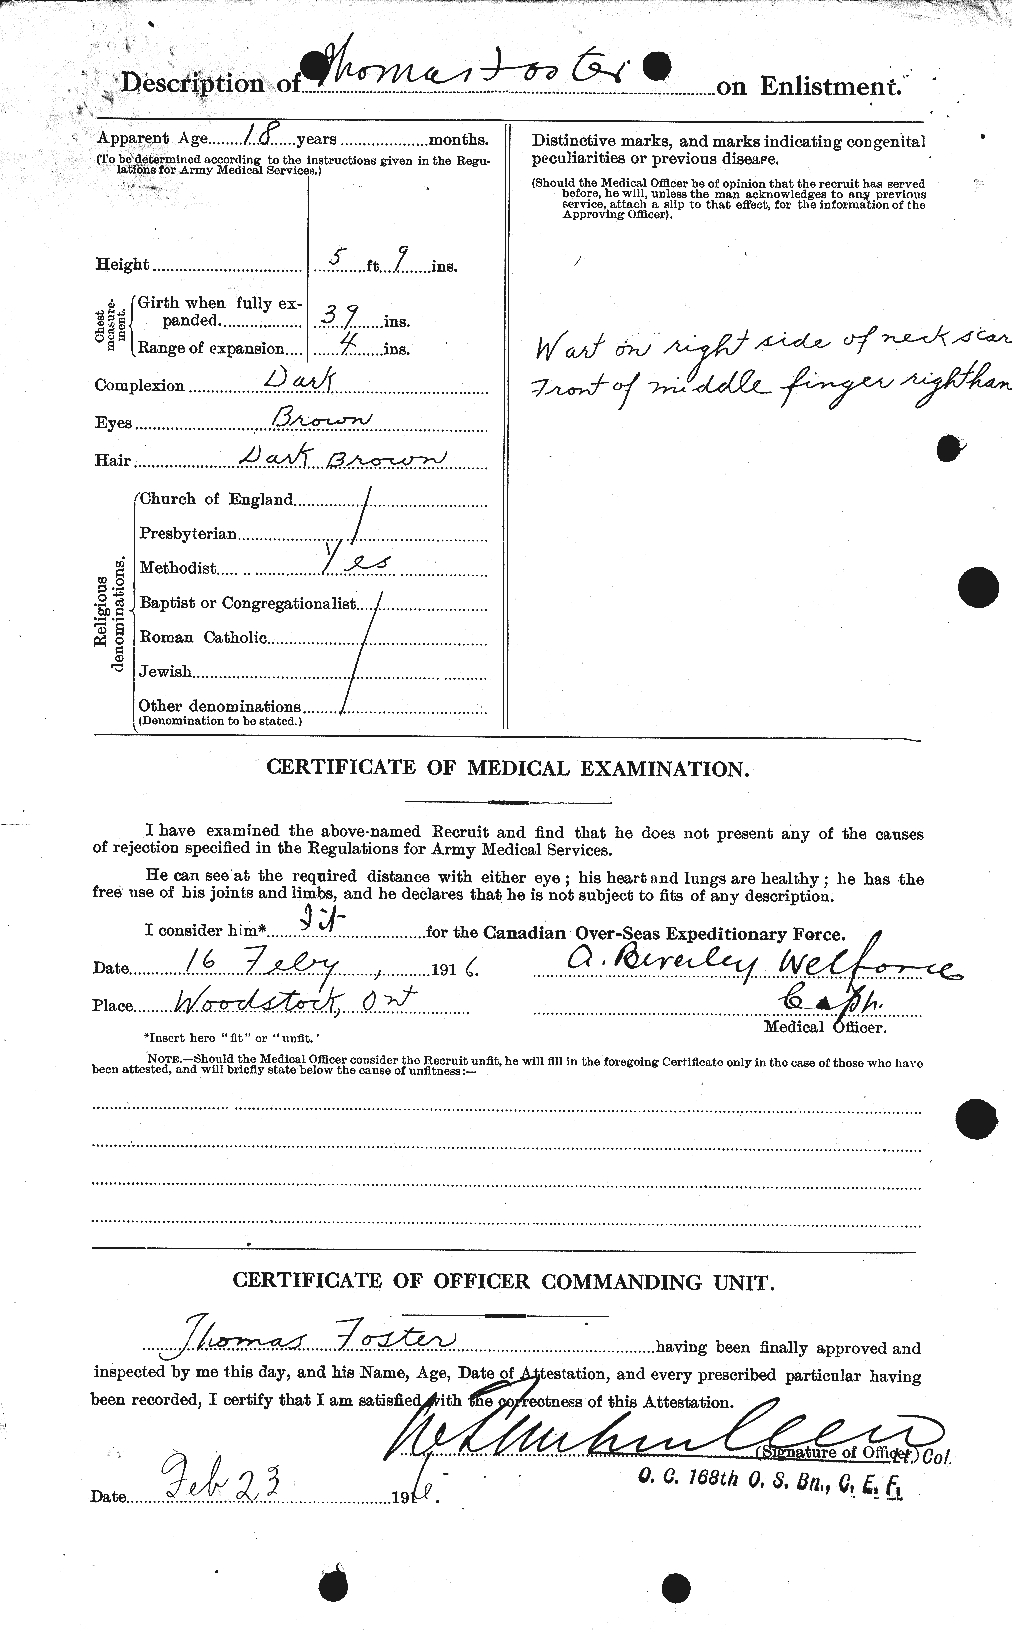 Dossiers du Personnel de la Première Guerre mondiale - CEC 335225b